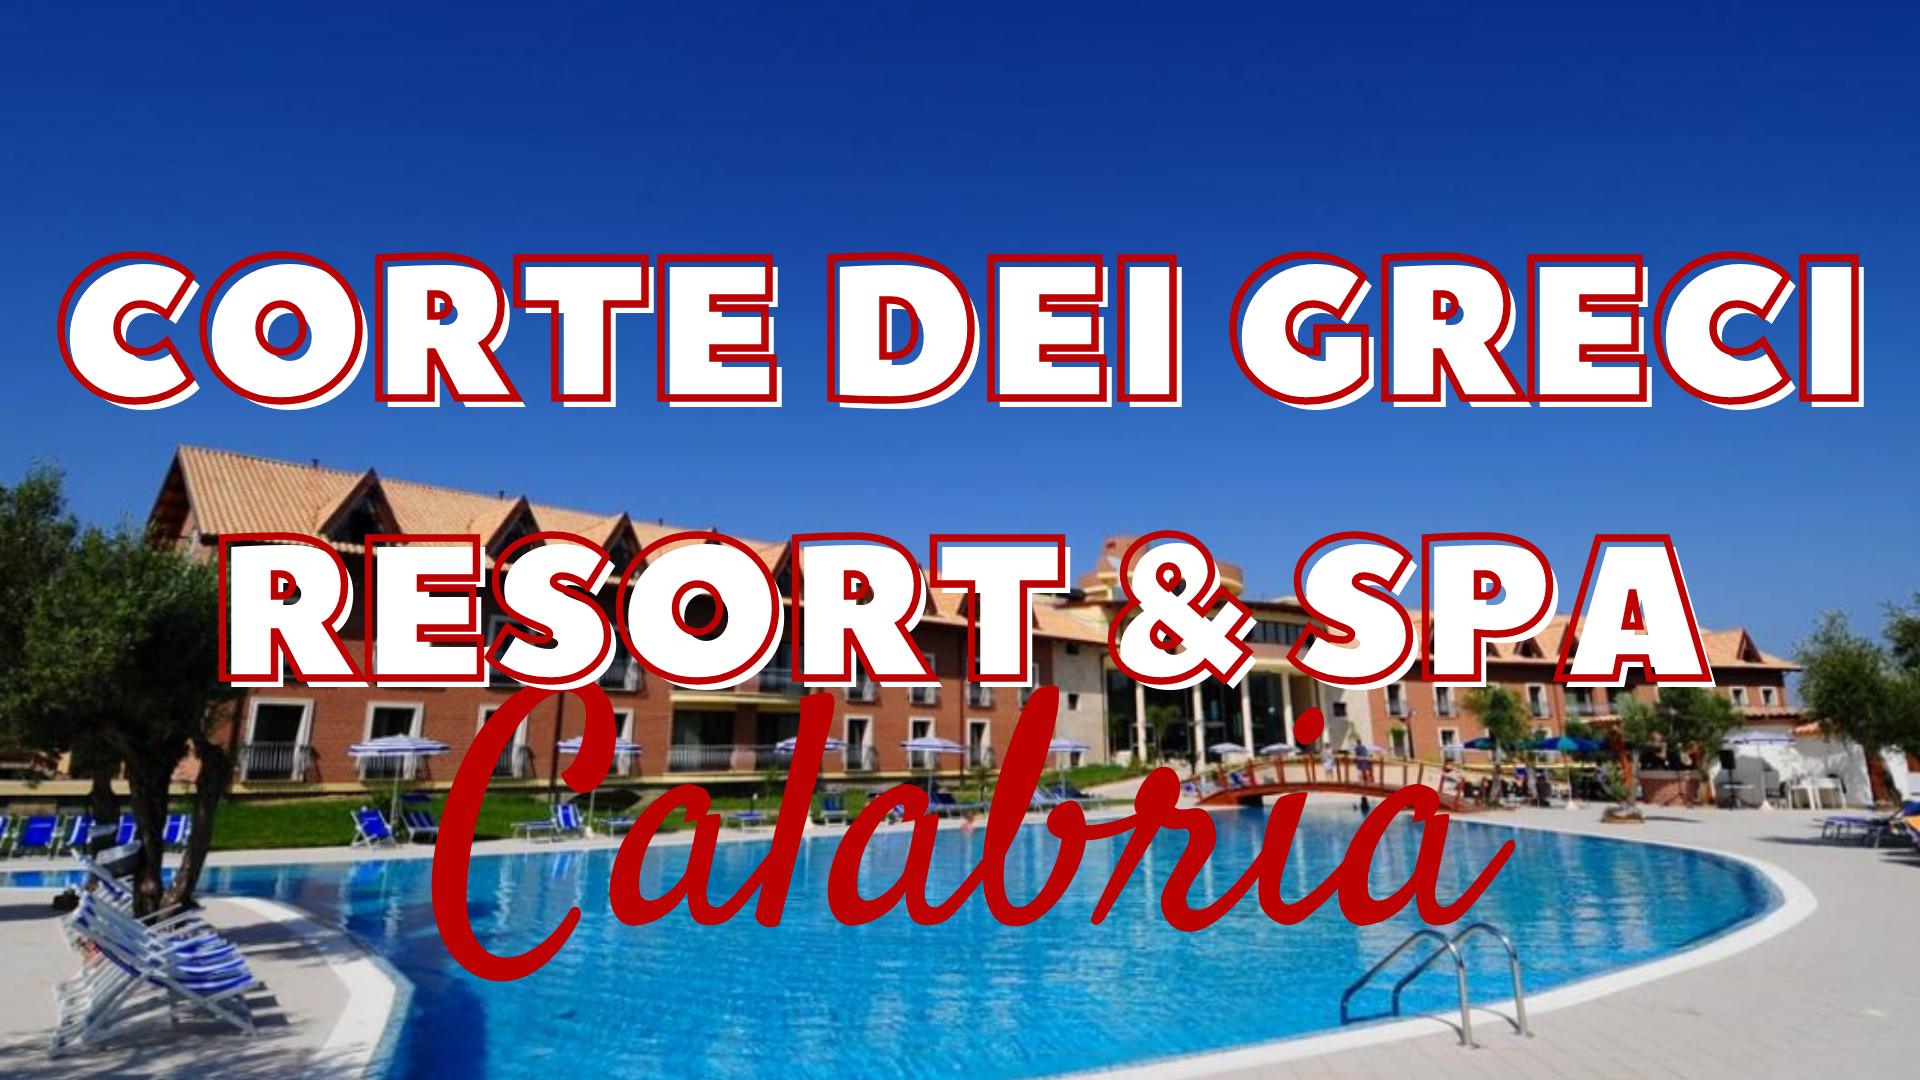 Corte dei greci resort and spa